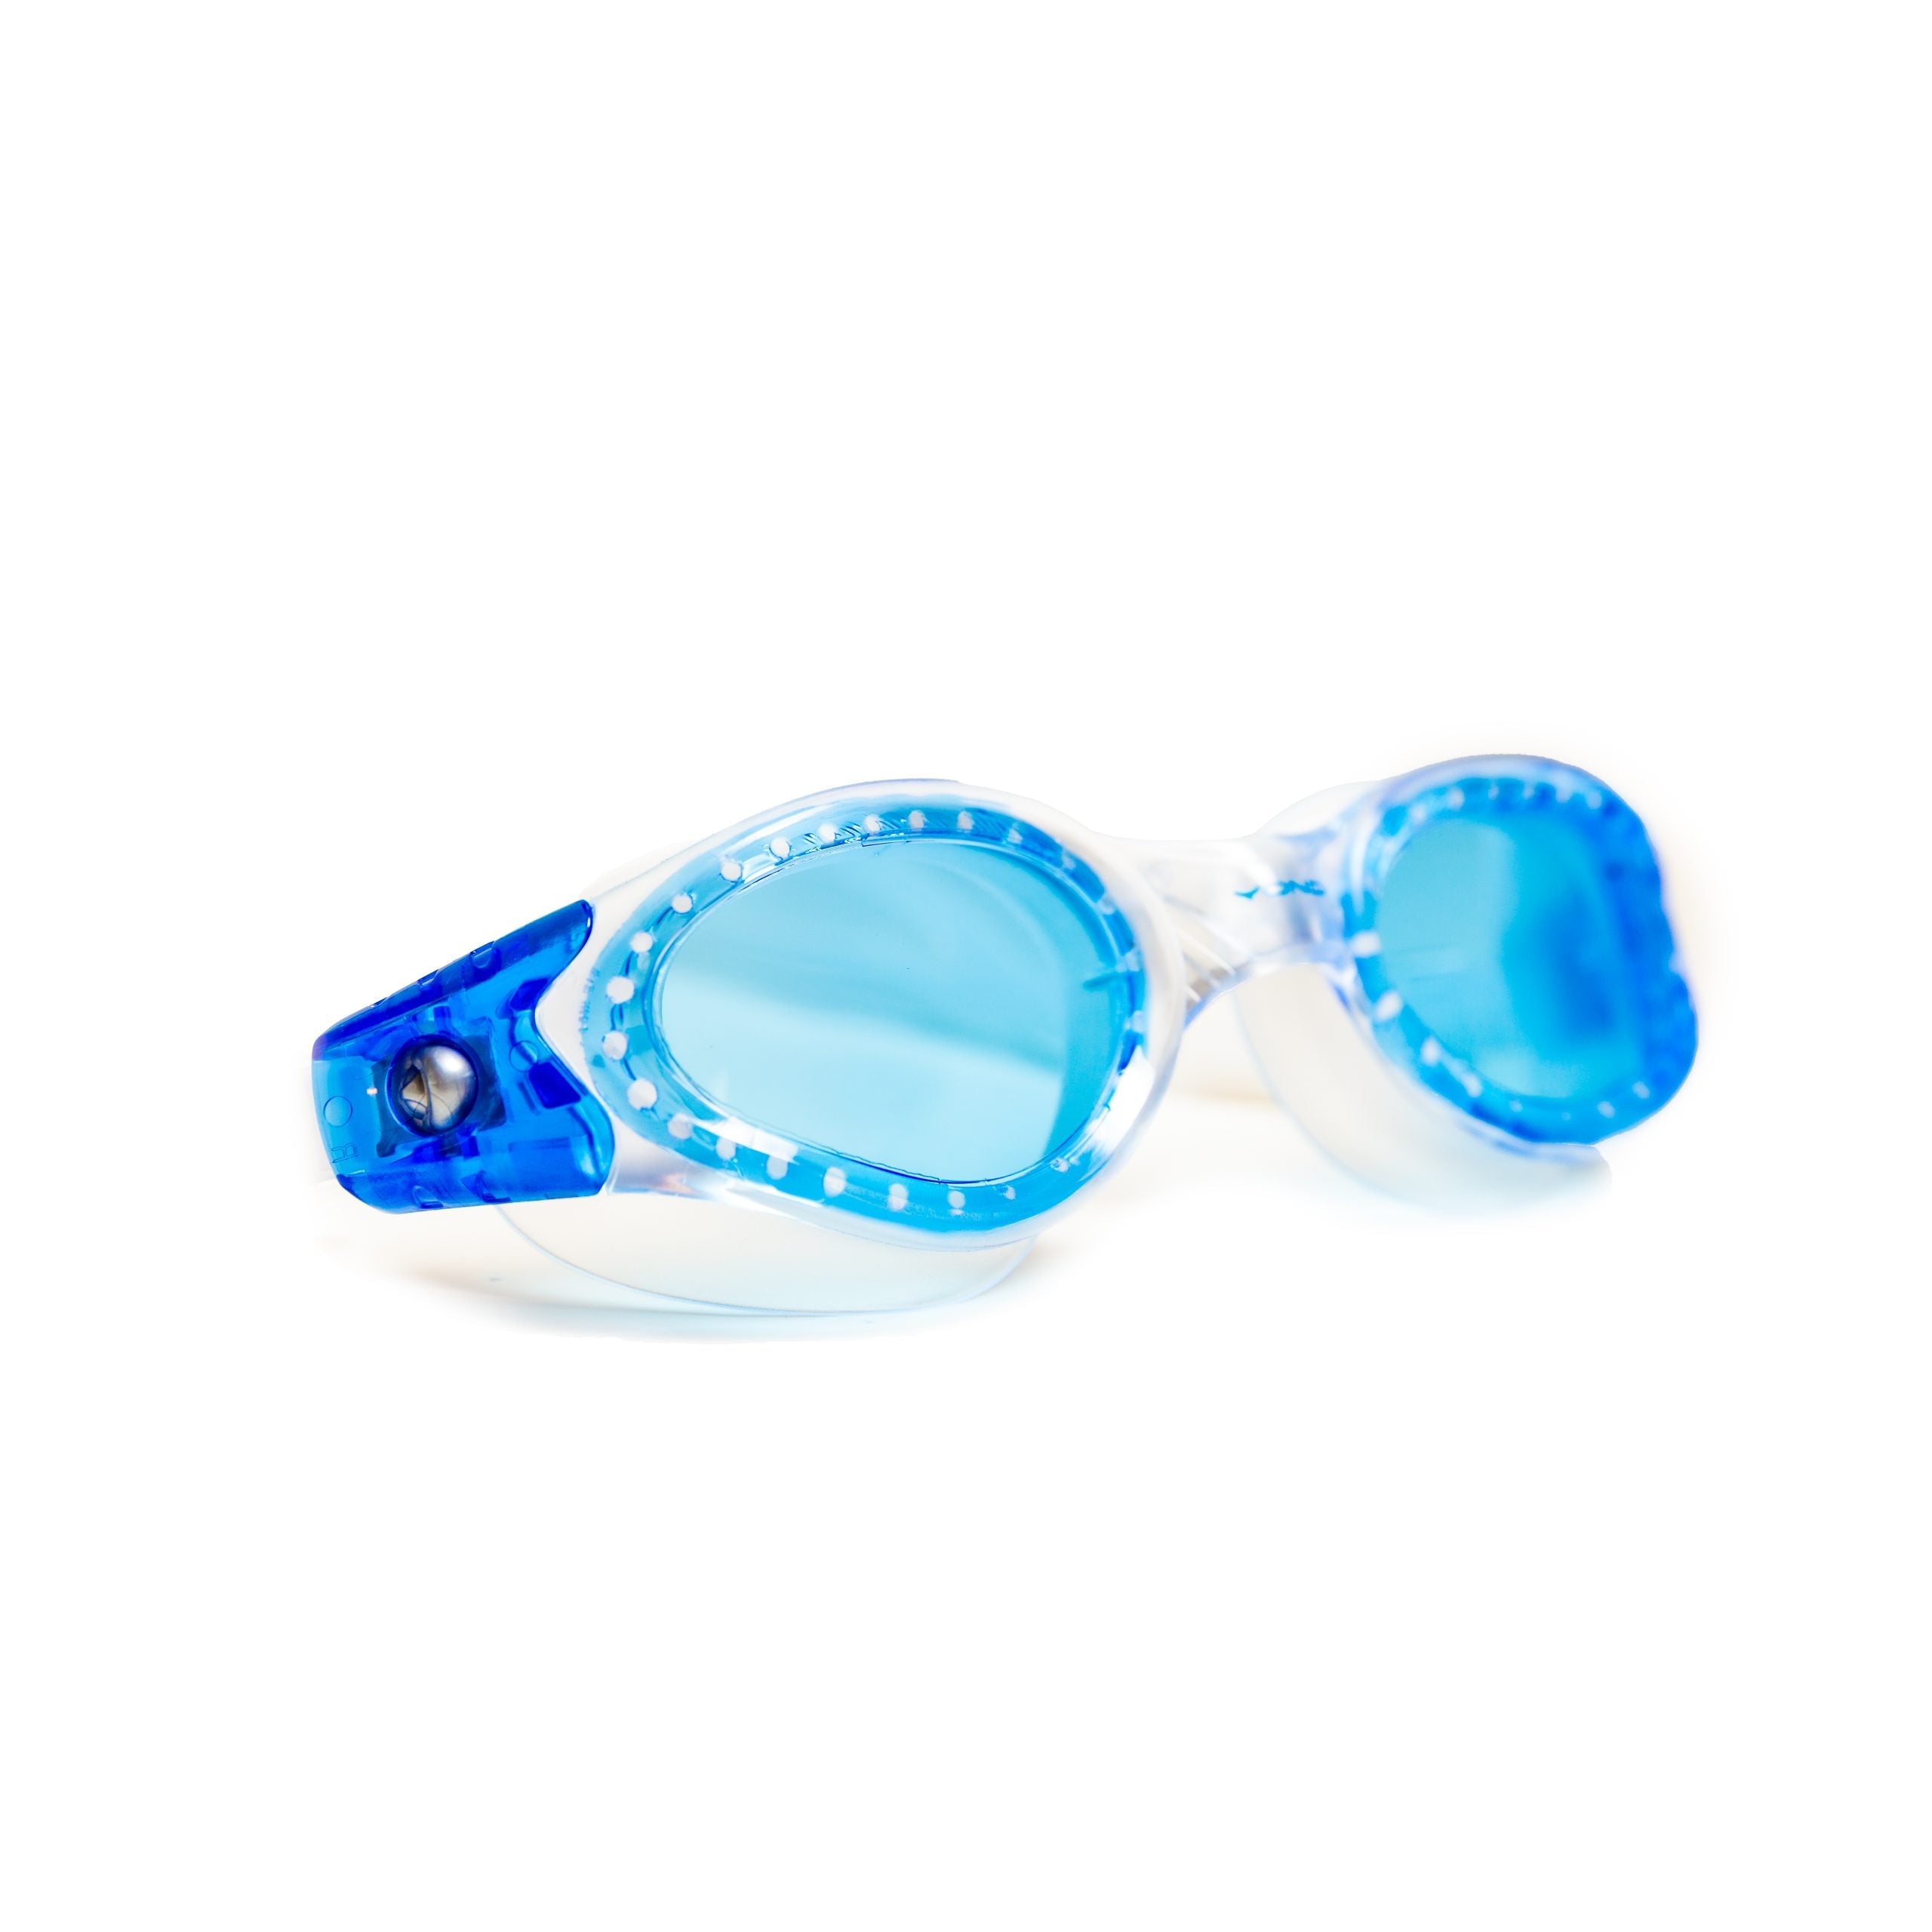 Hydro glide goggles